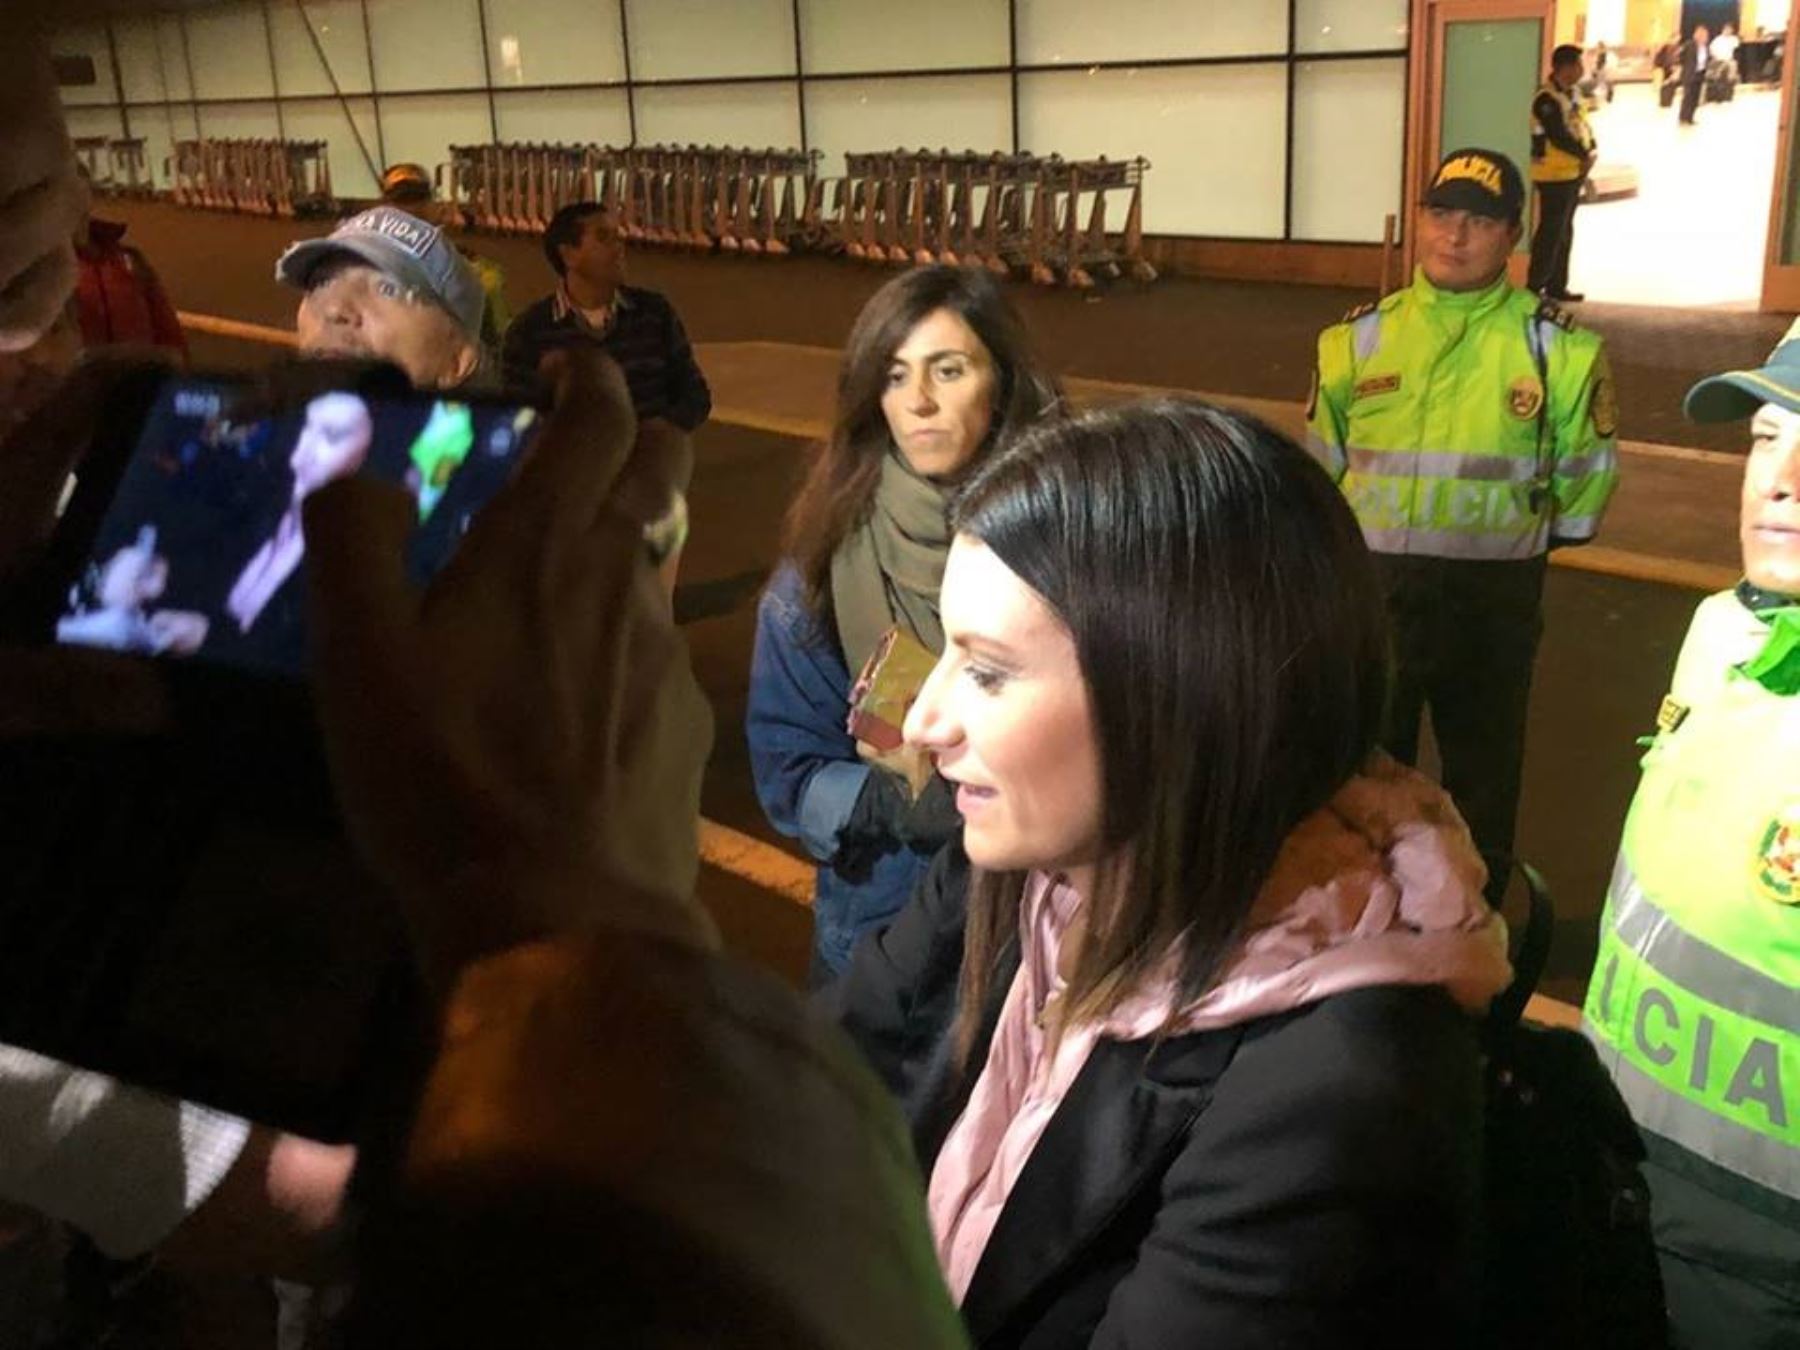 Laura en el aeropuerto limeño atendiendo a sus fans pese al frío reinante. Foto cortesía facebook Laura pausini PERÚ.